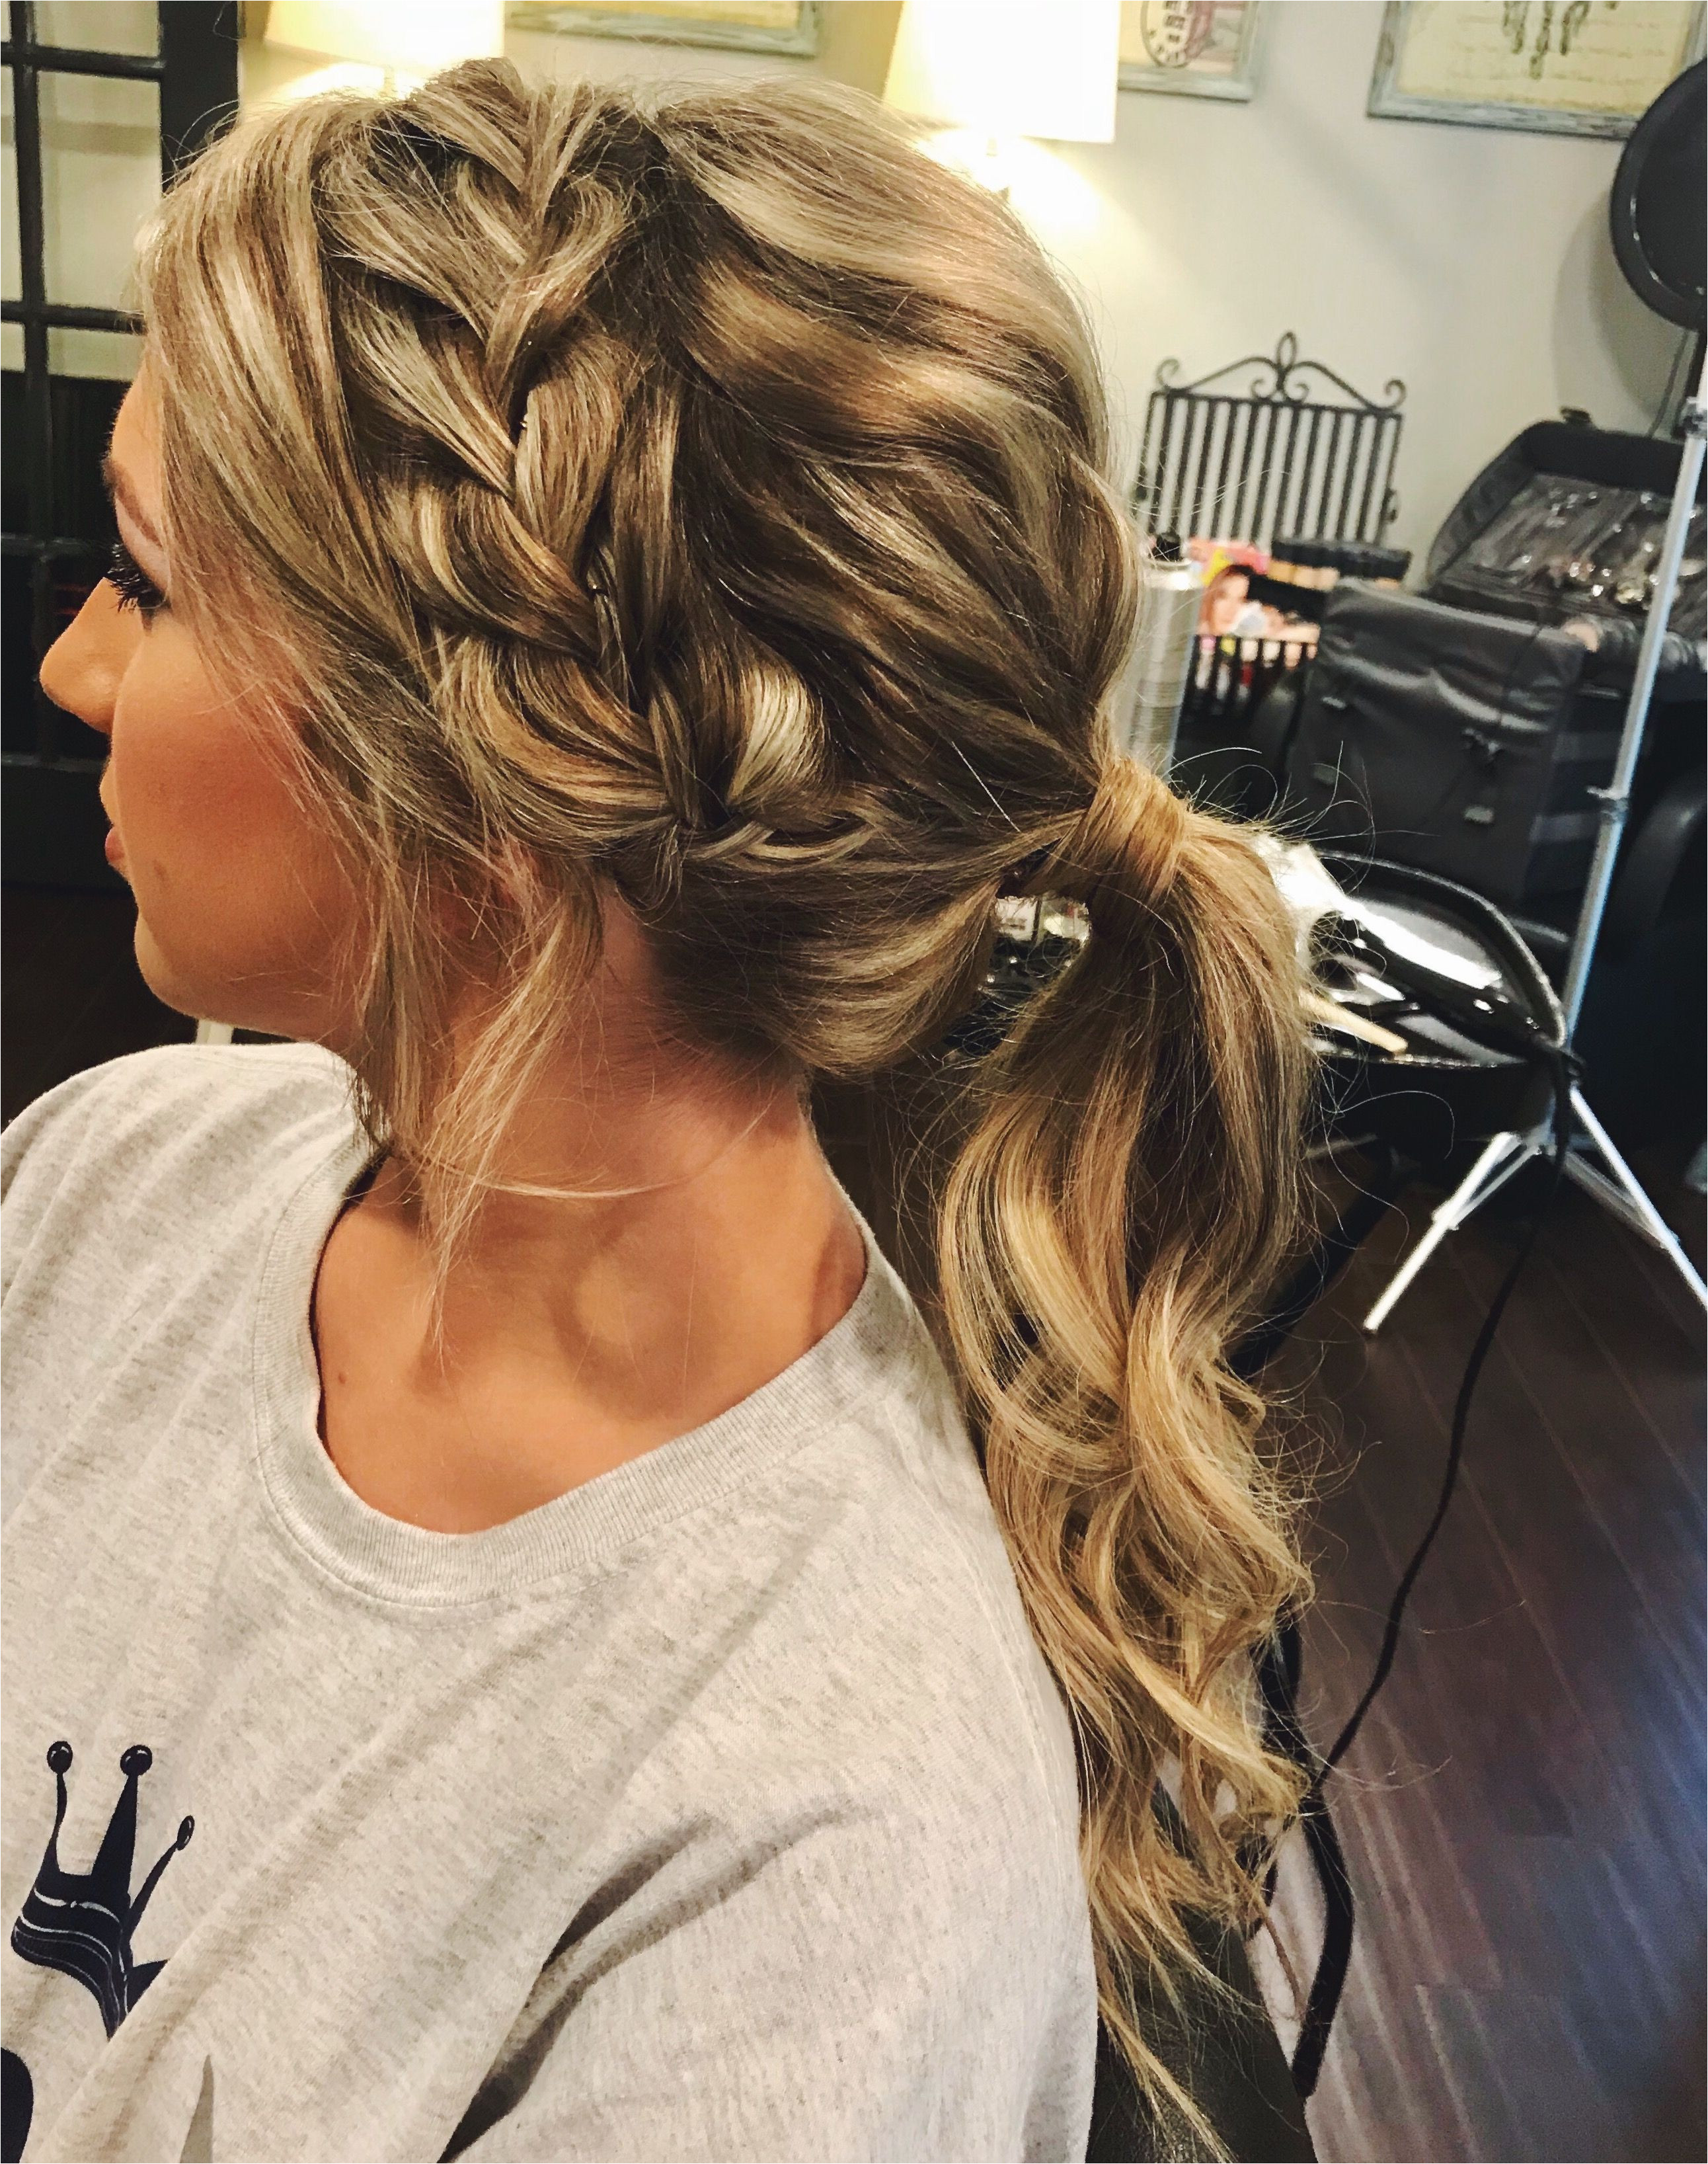 prom hair ponytail updo braid